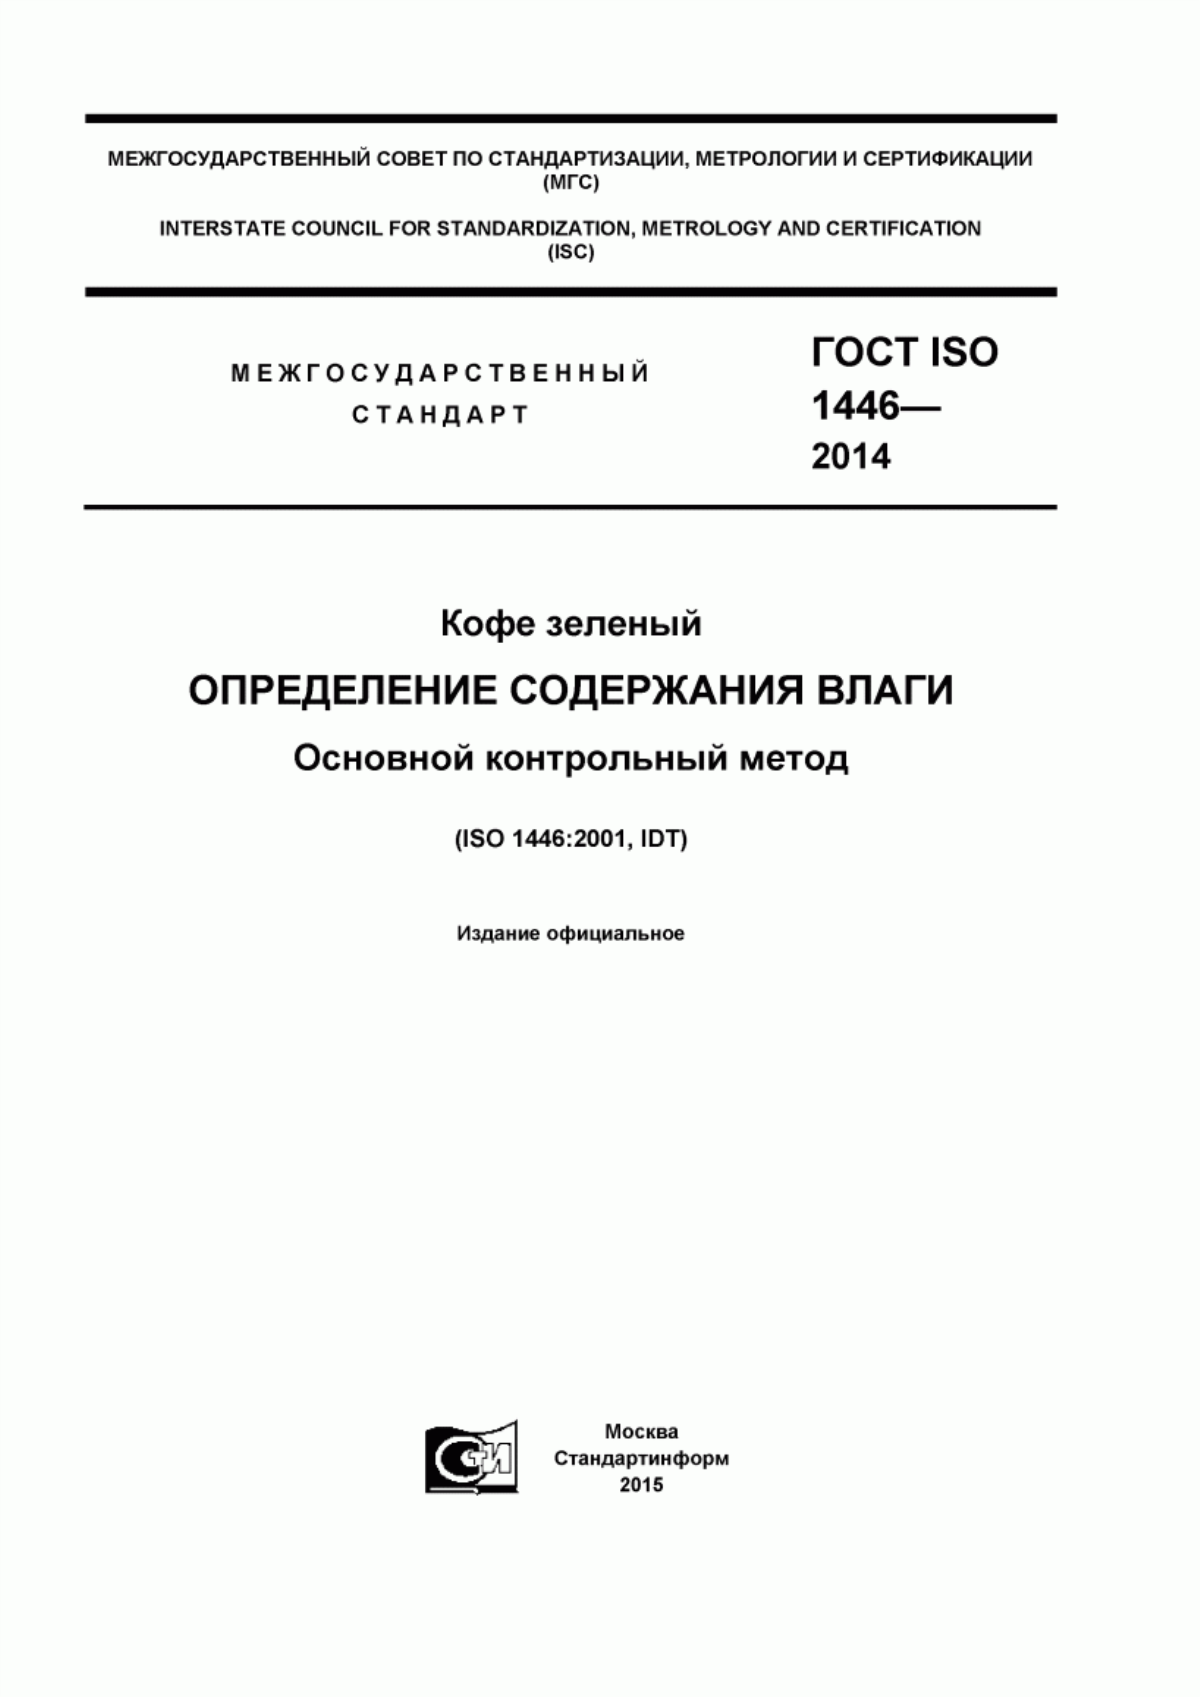 ГОСТ ISO 1446-2014 Кофе зеленый. Определение содержания влаги. Основной контрольный метод